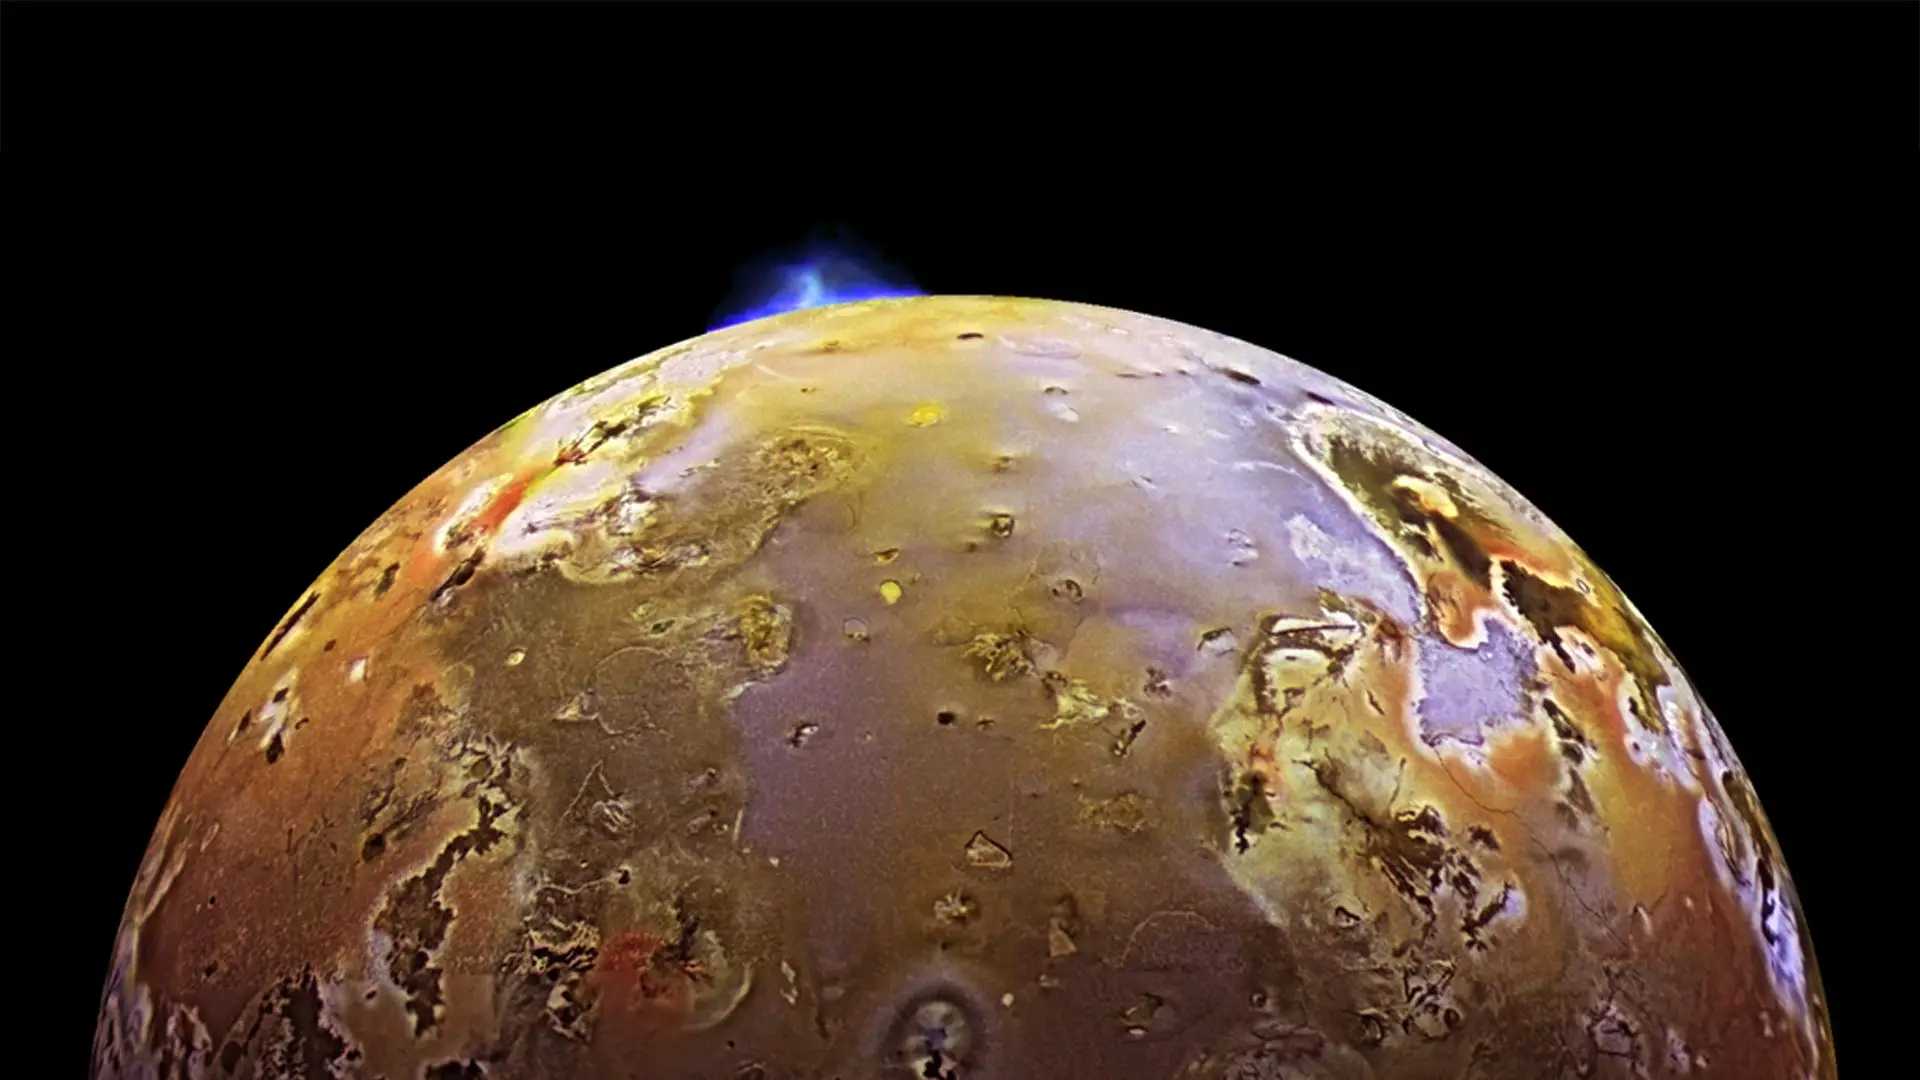 На спутнике Юпитера нашли 266 активных вулканов, вероятно, объединенных глобальным океаном магмы